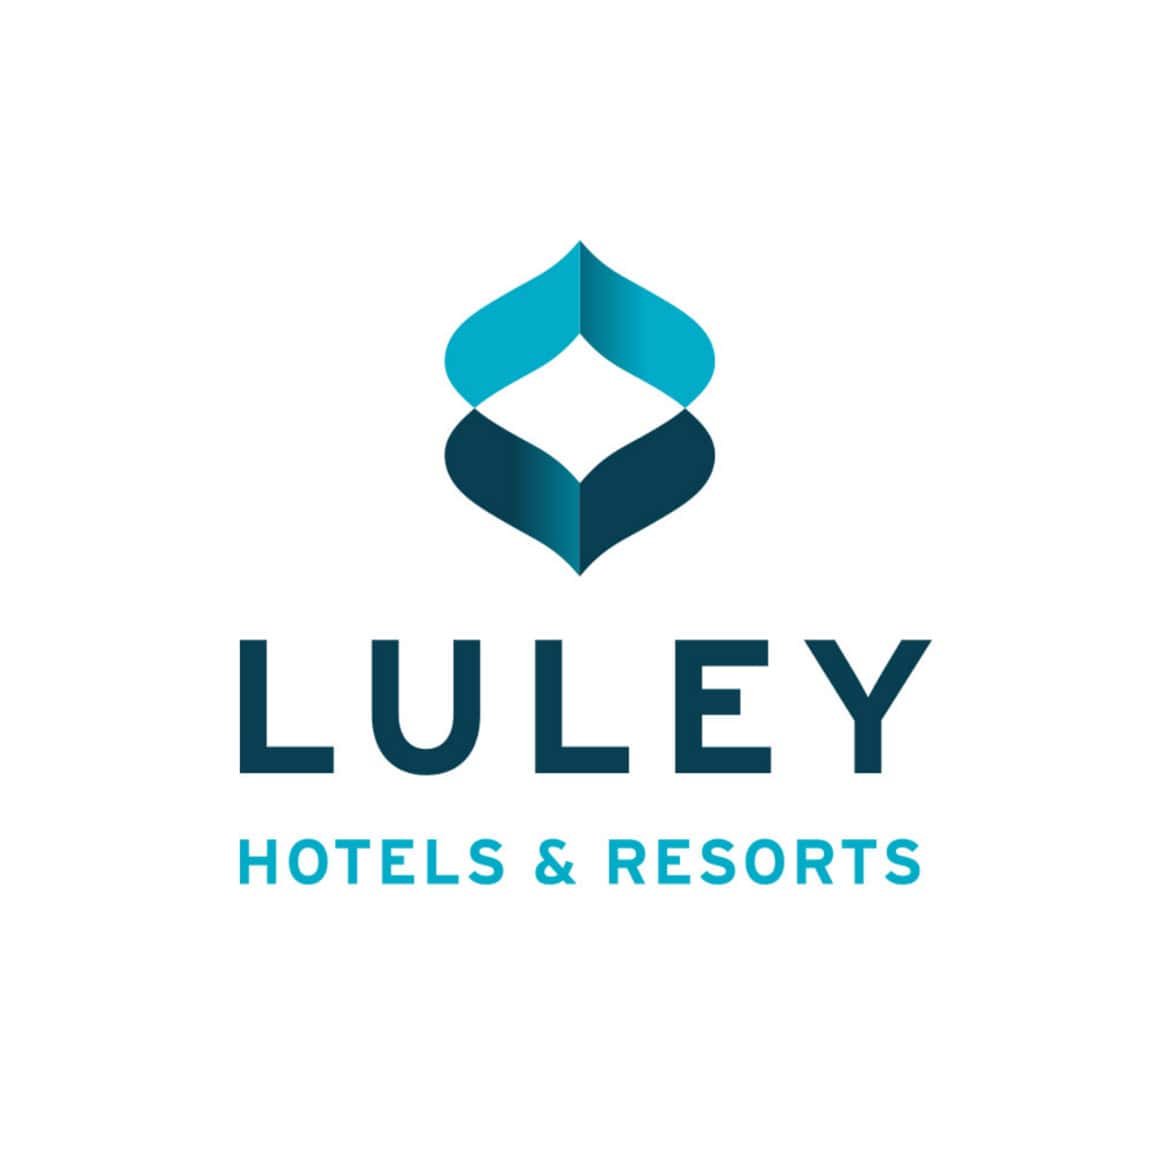 Luley logo design - desain logo Luley